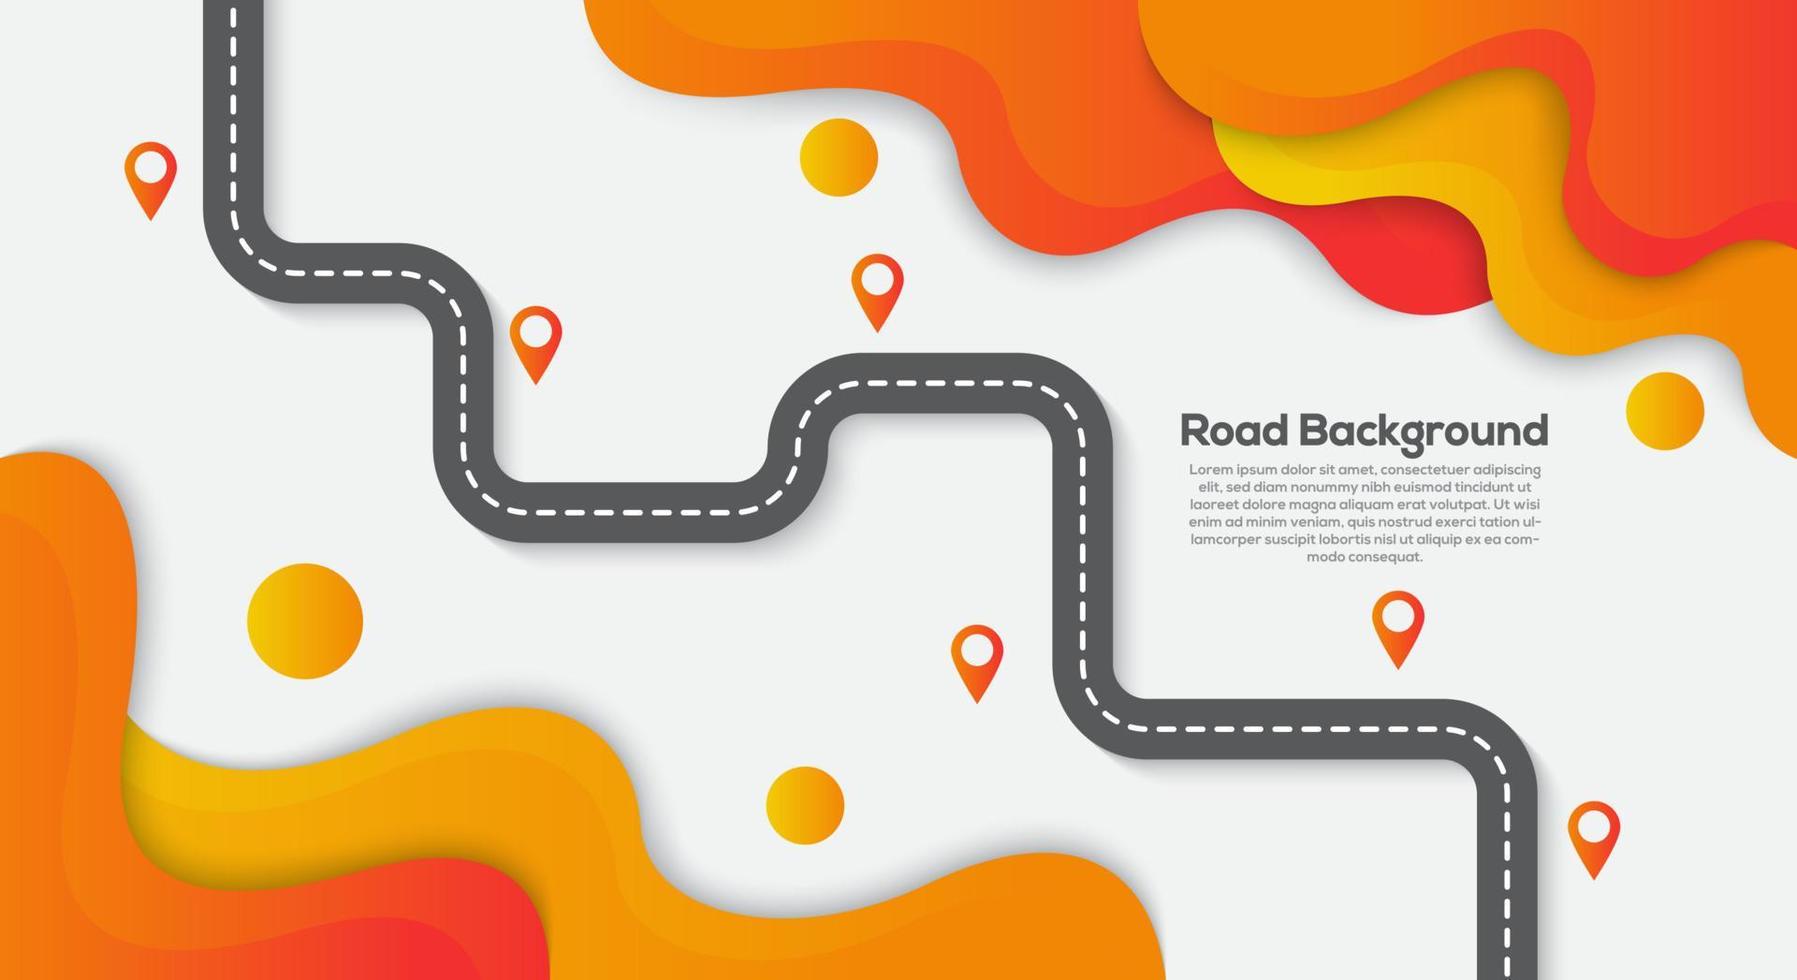 Roadtrip und Reiseroute. kurvenreiche Straße auf einem bunten orangefarbenen Hintergrund mit Pin-Zeiger. vektor